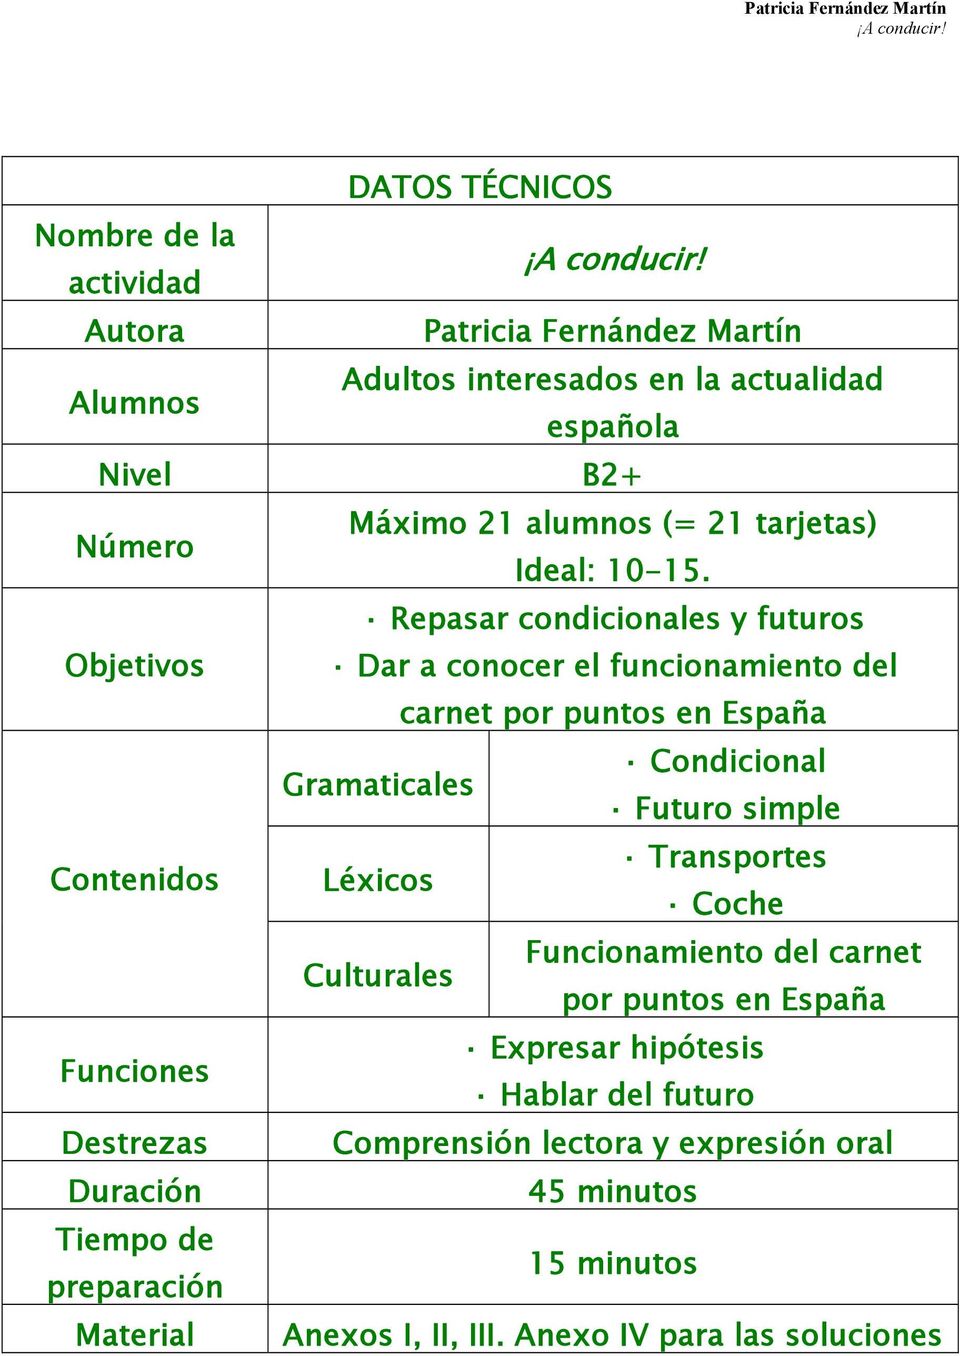 Repasar condicionales y futuros Objetivos Dar a conocer el funcionamiento del carnet por puntos en España Gramaticales Condicional Futuro simple Contenidos